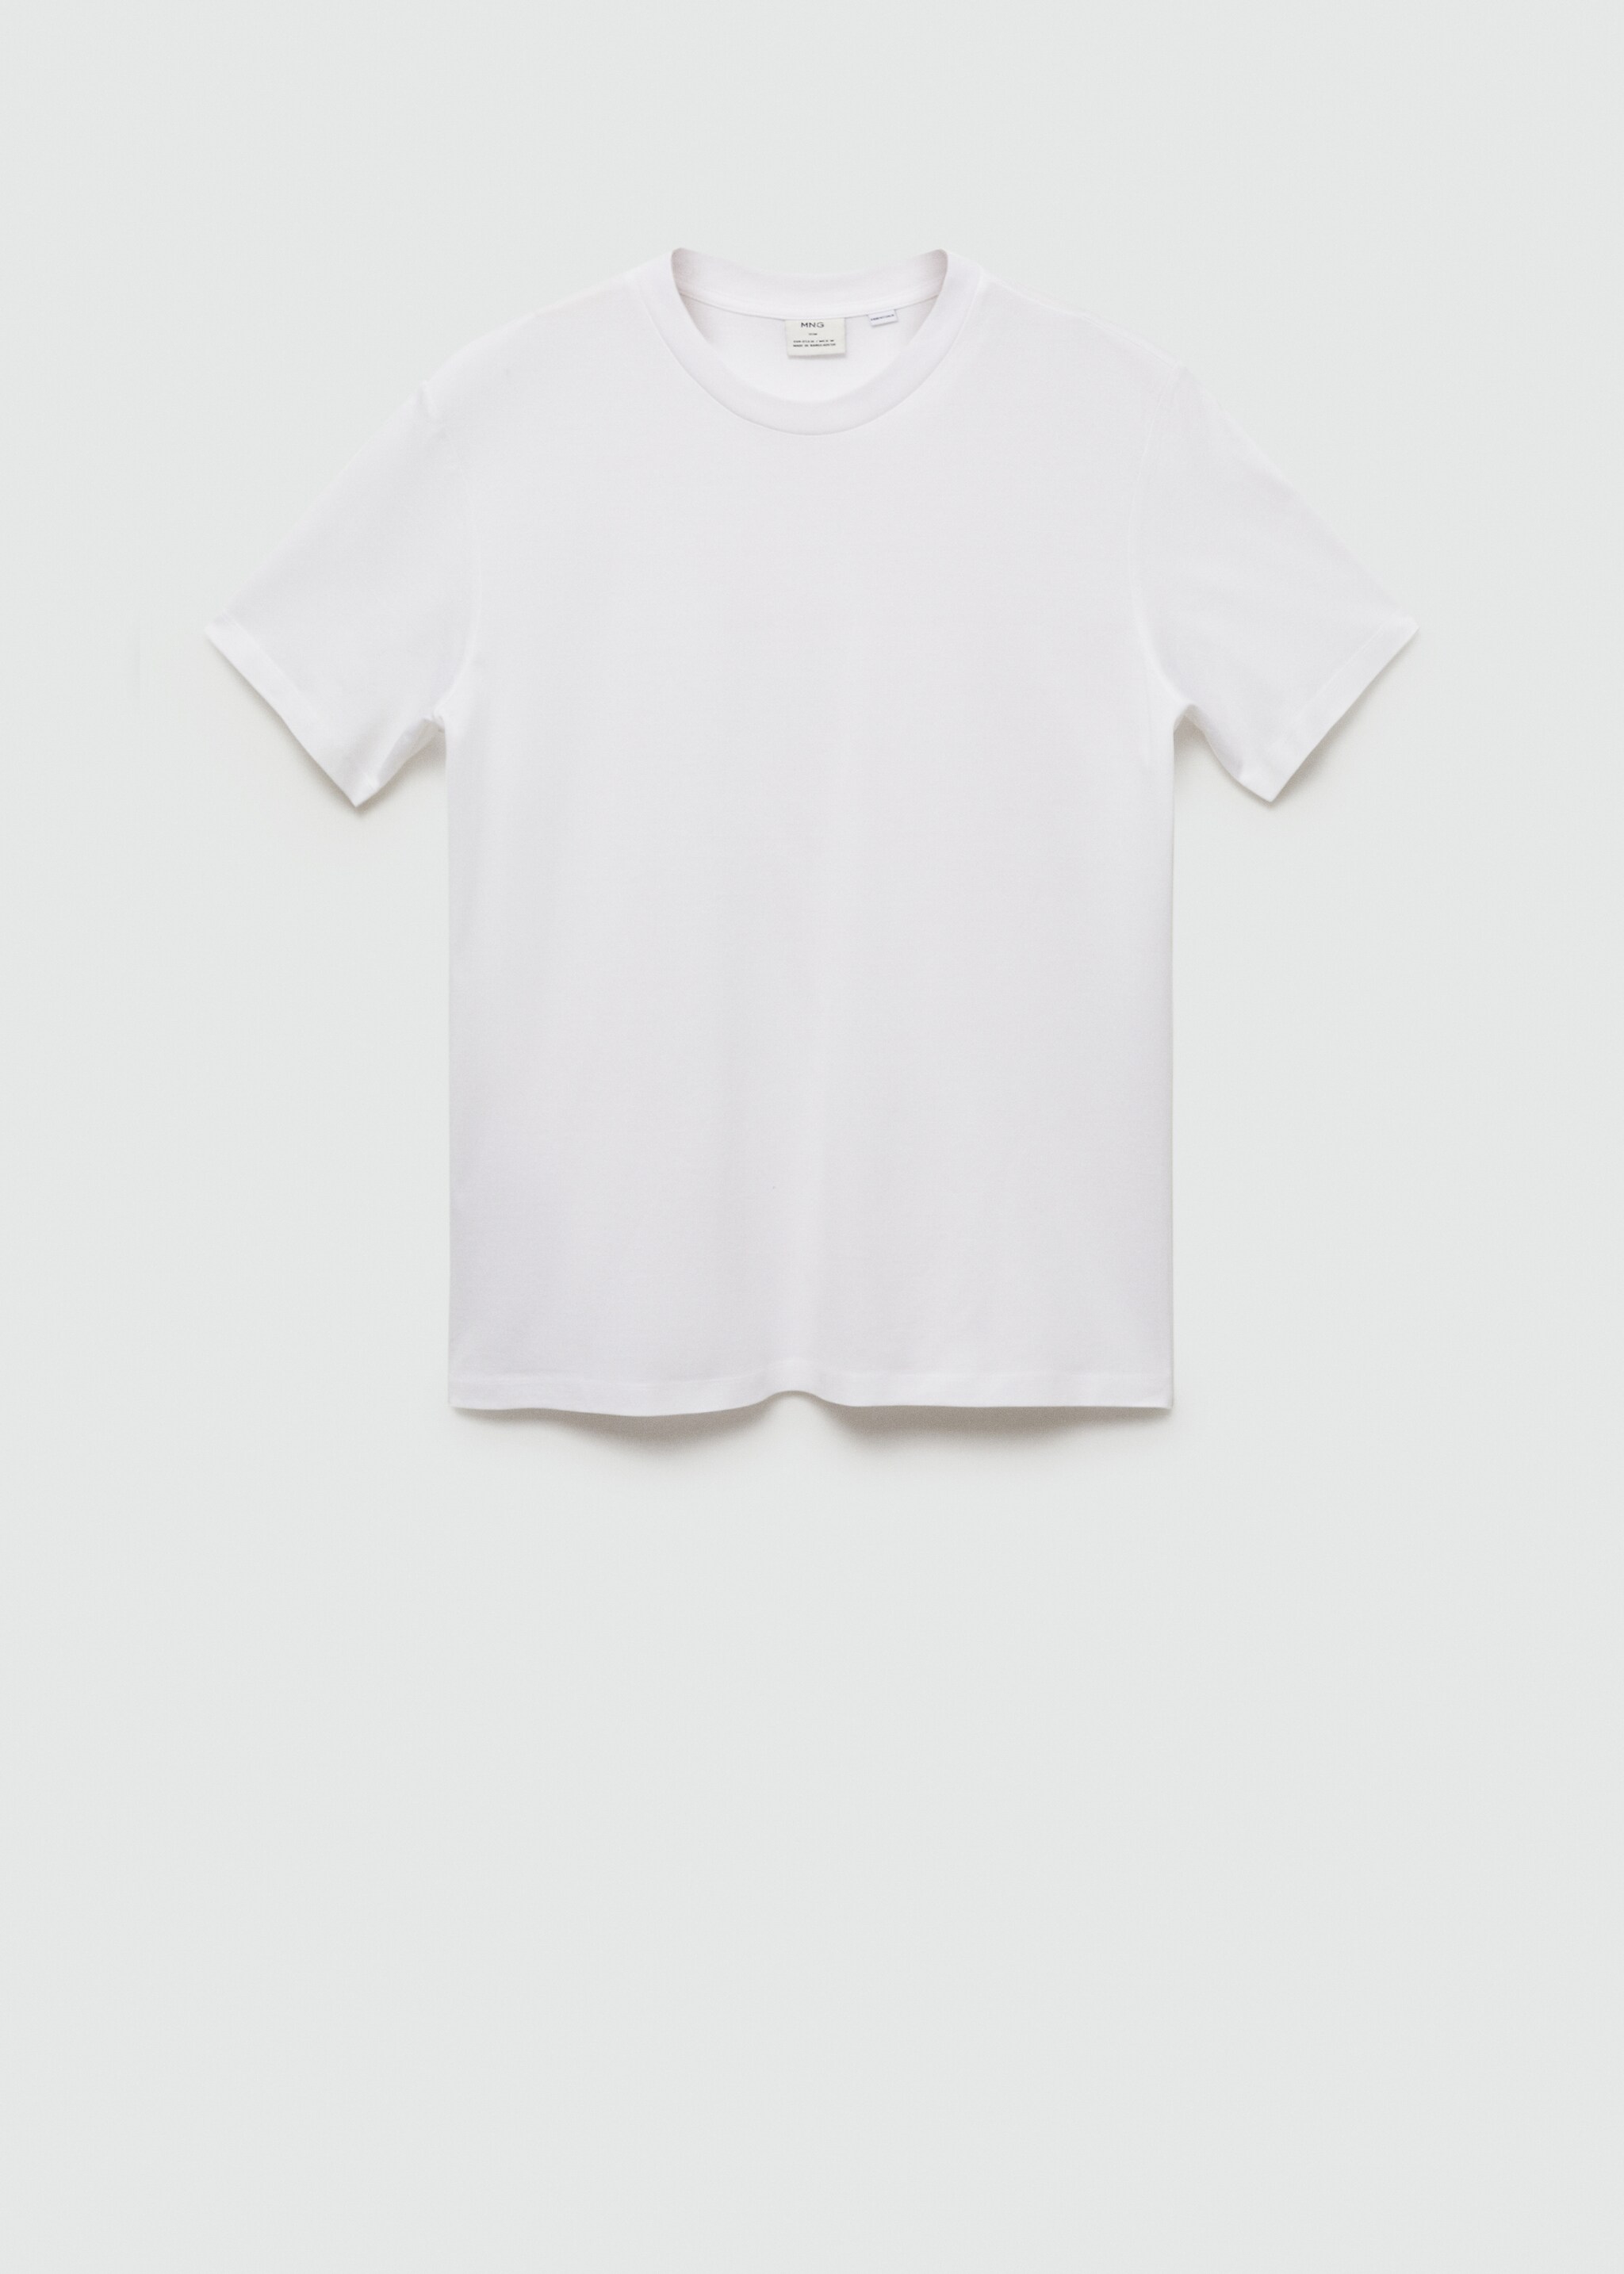 Koszulka slim fit z 100% bawełny - Artykuł bez modela/modelki